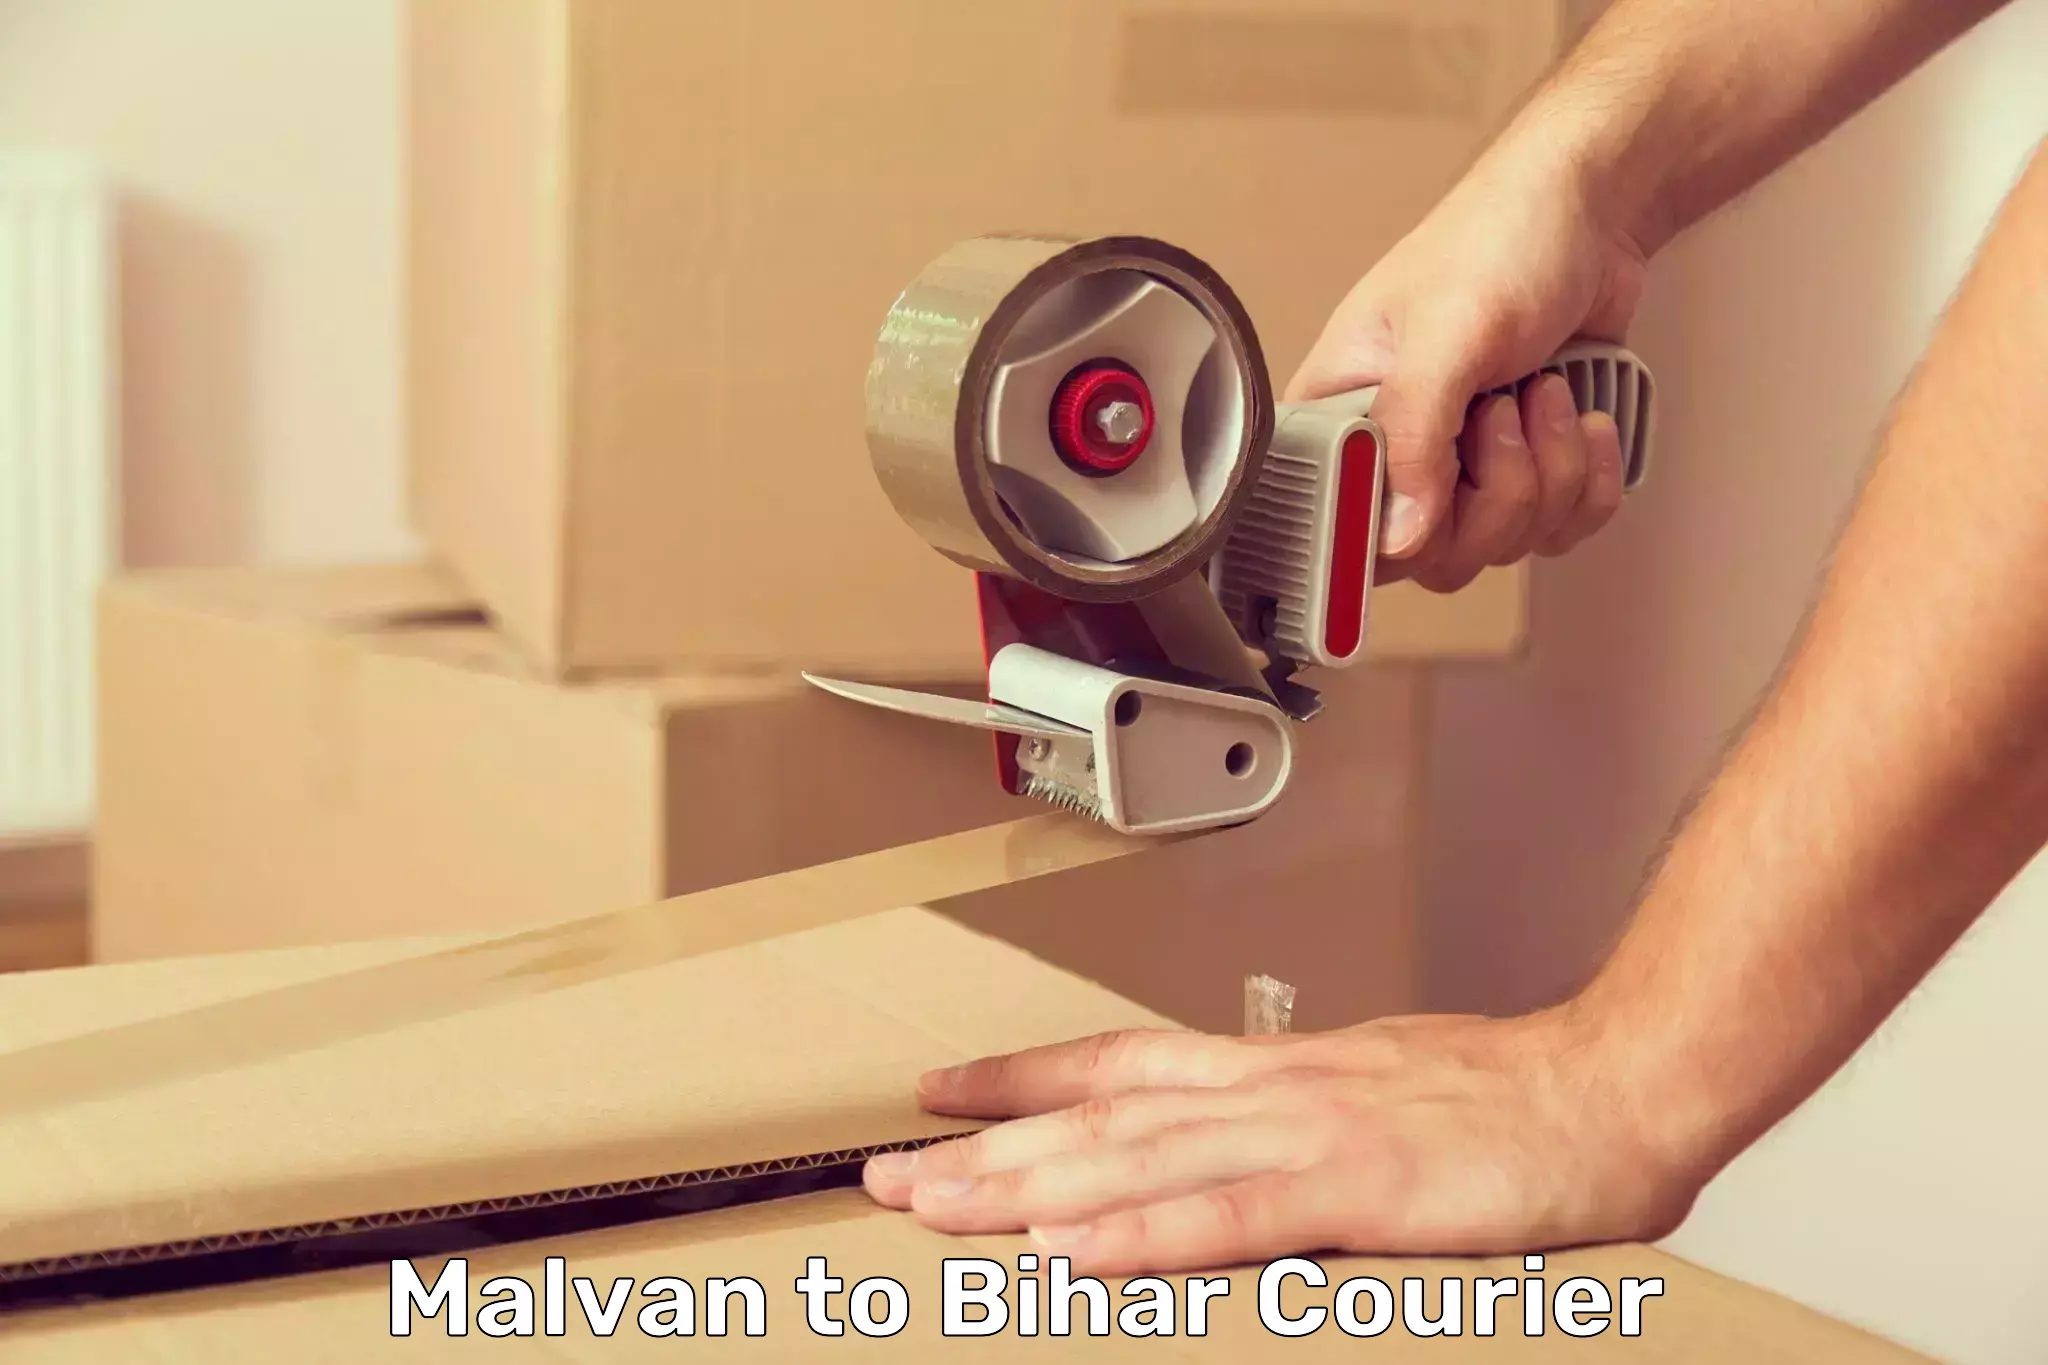 Business courier solutions in Malvan to Bihar